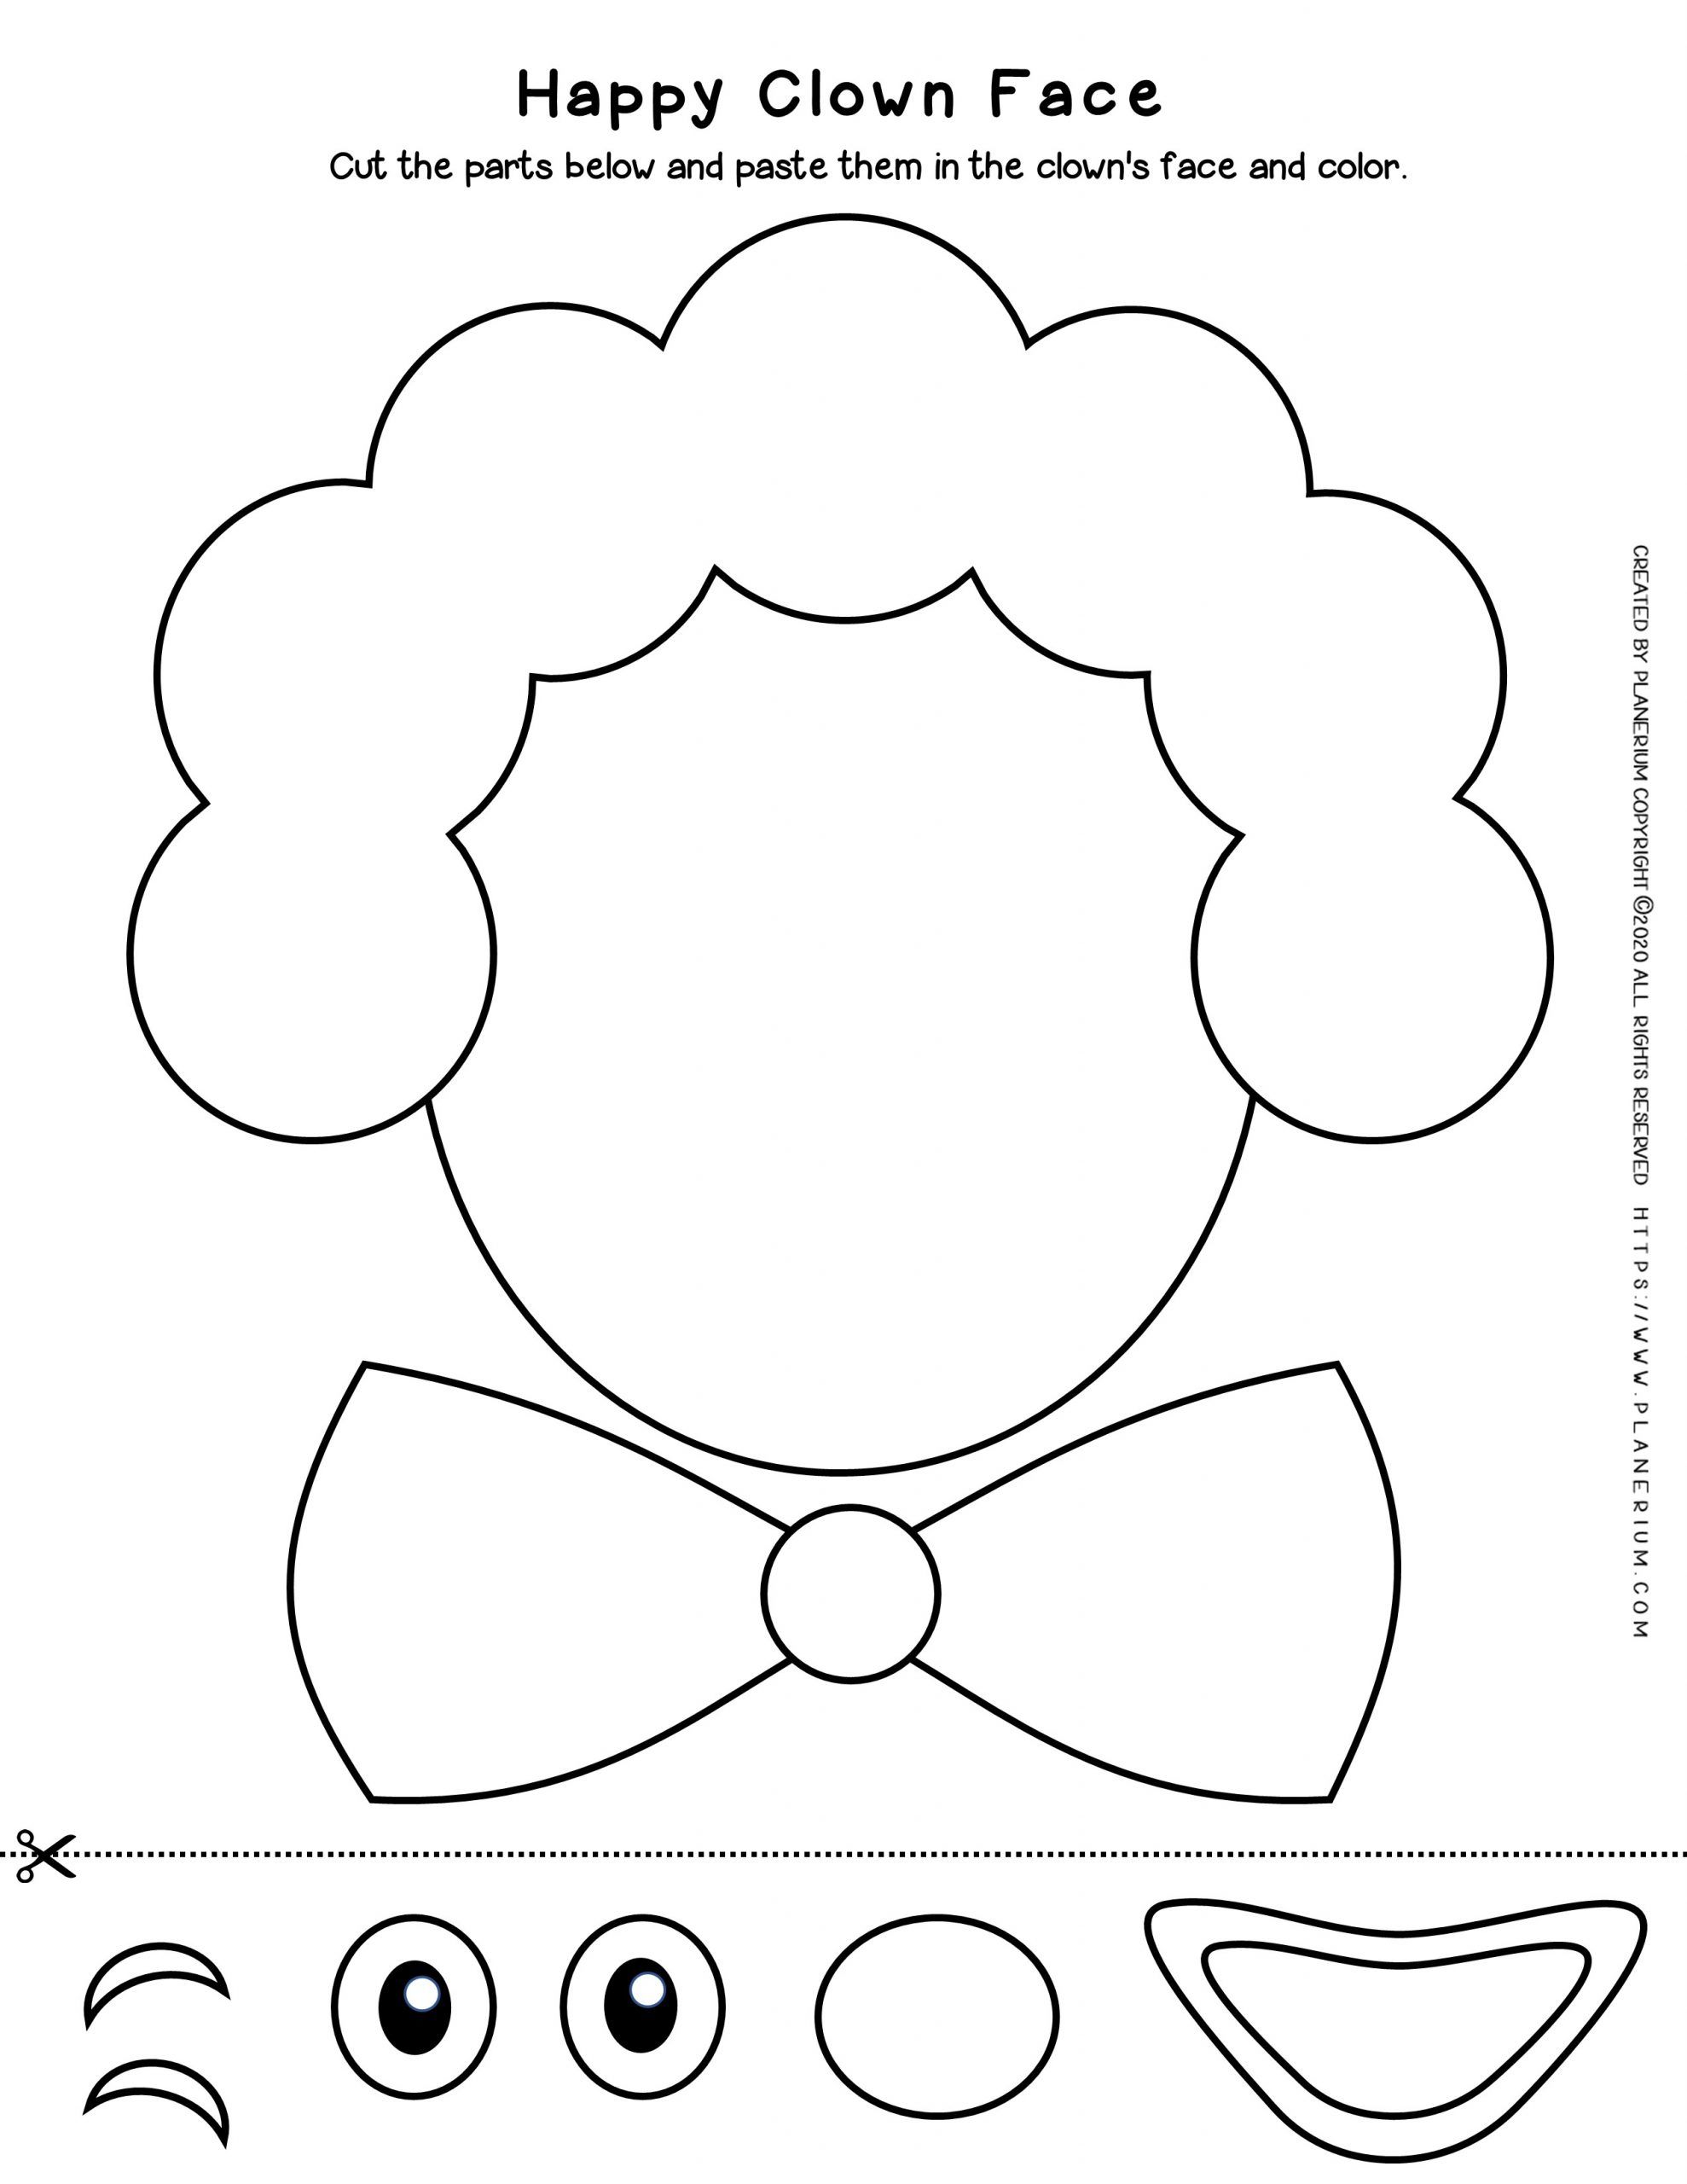 preschool cut and paste worksheet coloringrocks craftsactvities and